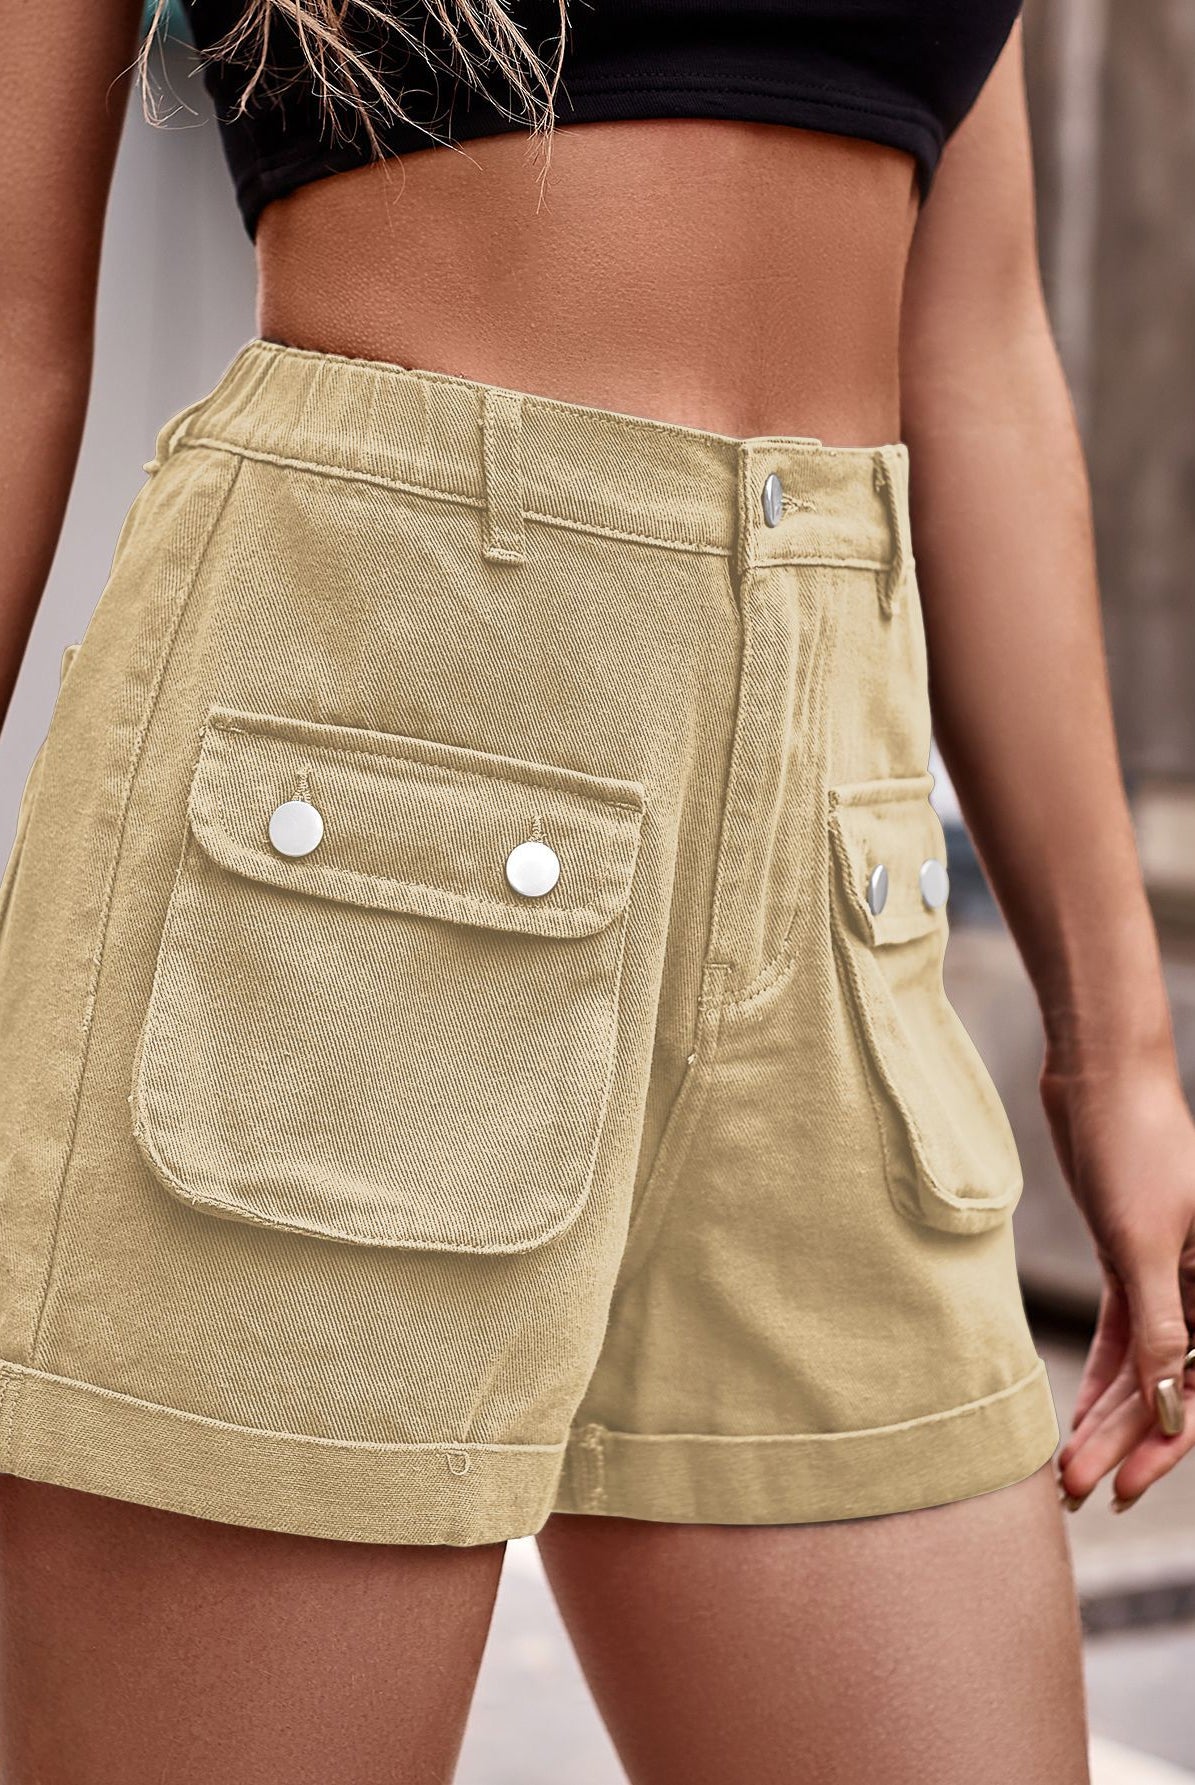 Rosy Brown Cuffed Denim Shorts with Pockets Denim